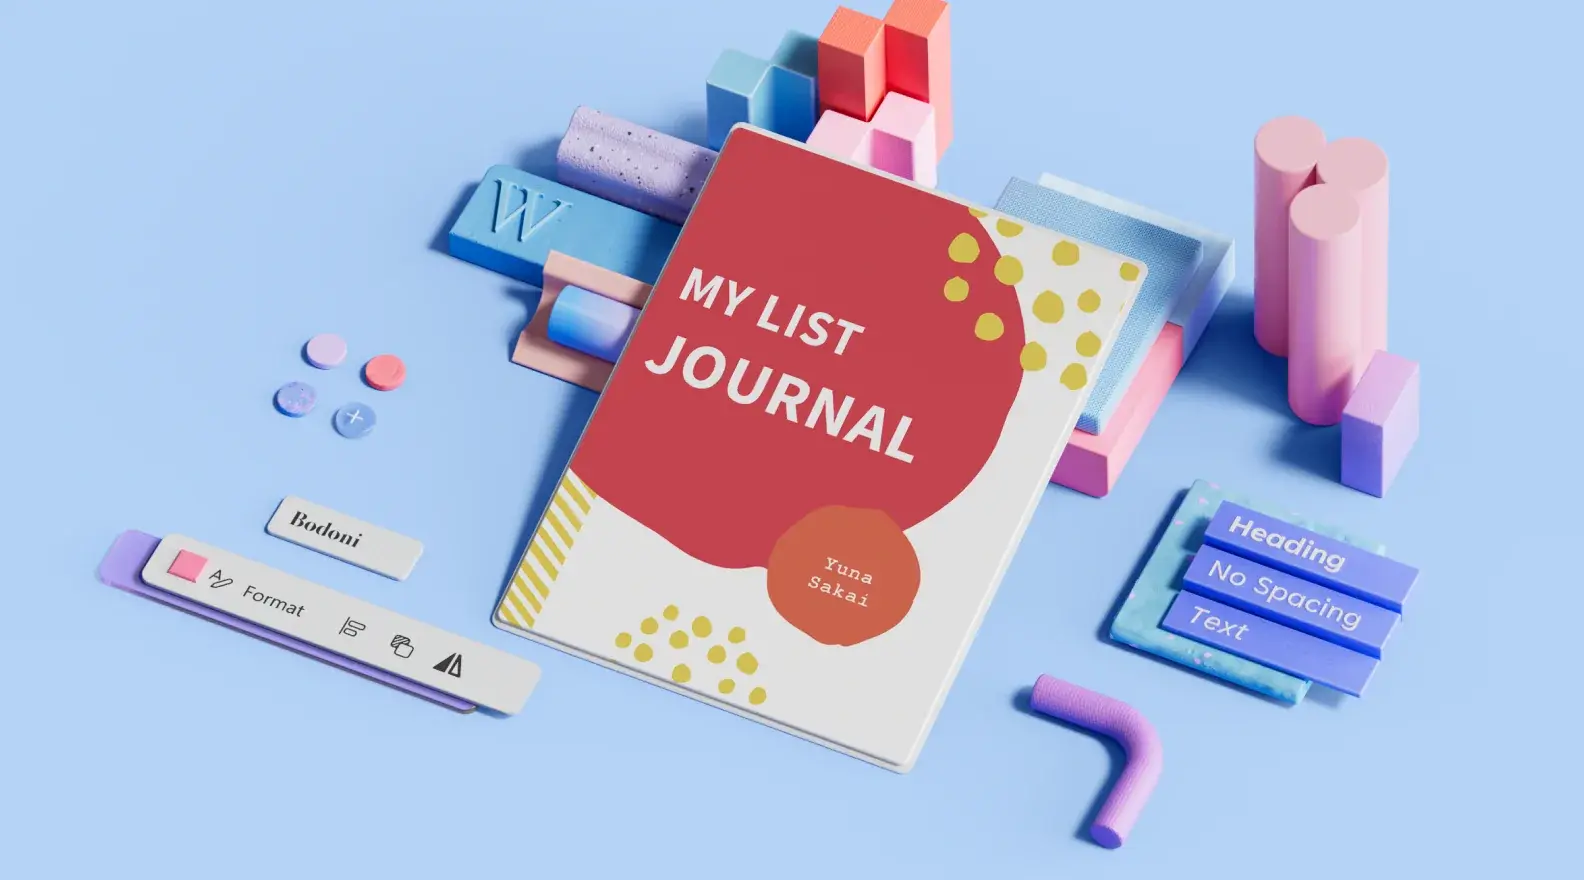 Sjabloon voor een dagboek in lijststijl, omgeven door 3D-ontwerpelementen